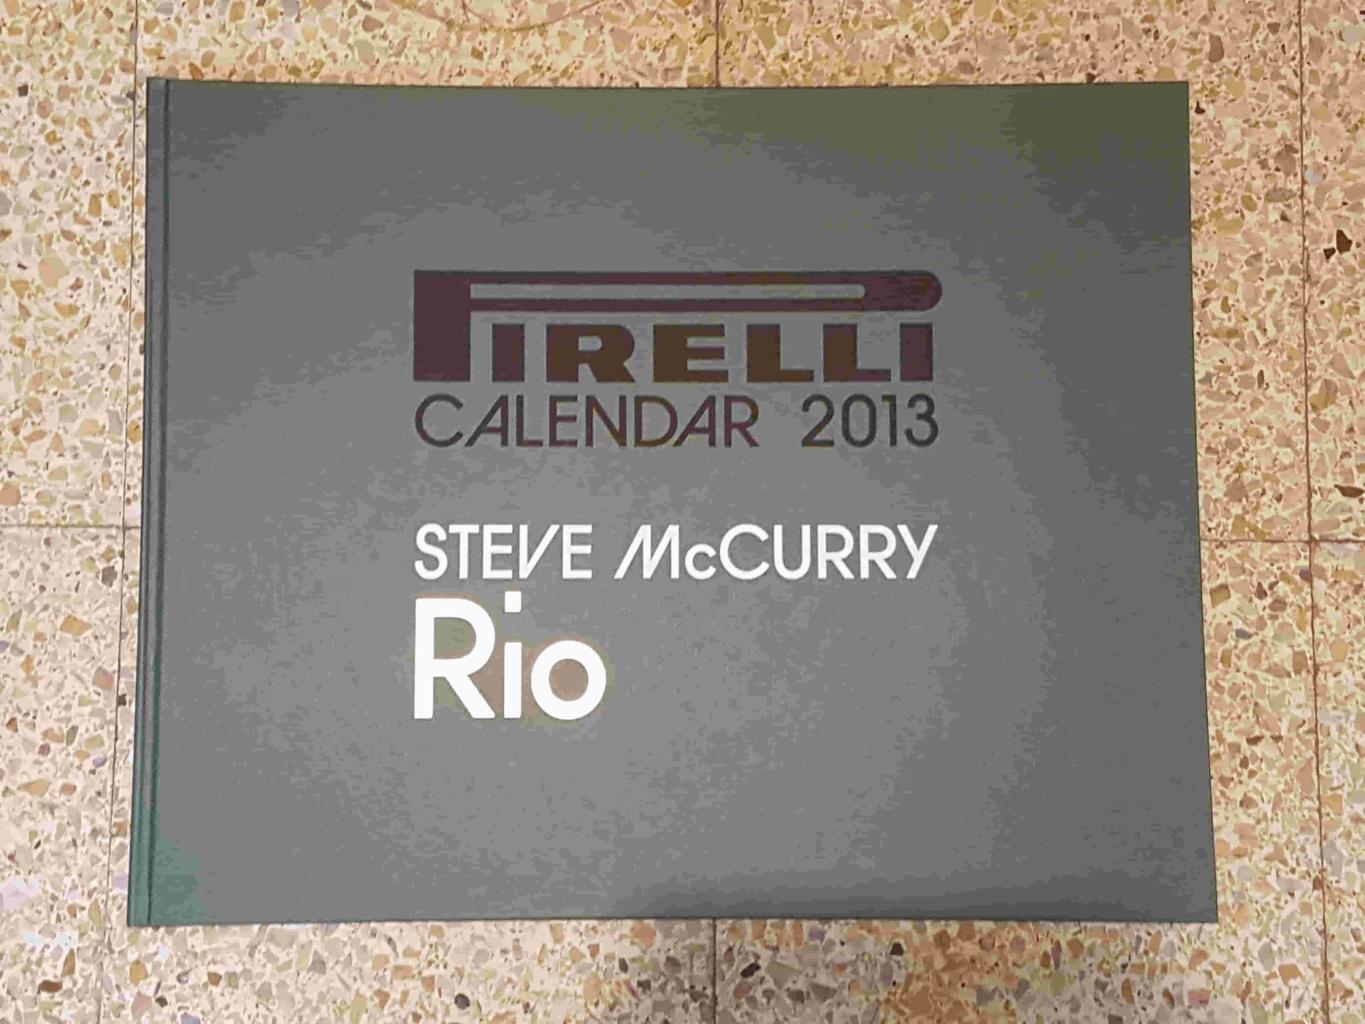 Calendario: Pirelli 2013, fotografias por Steve McCurry - Rio